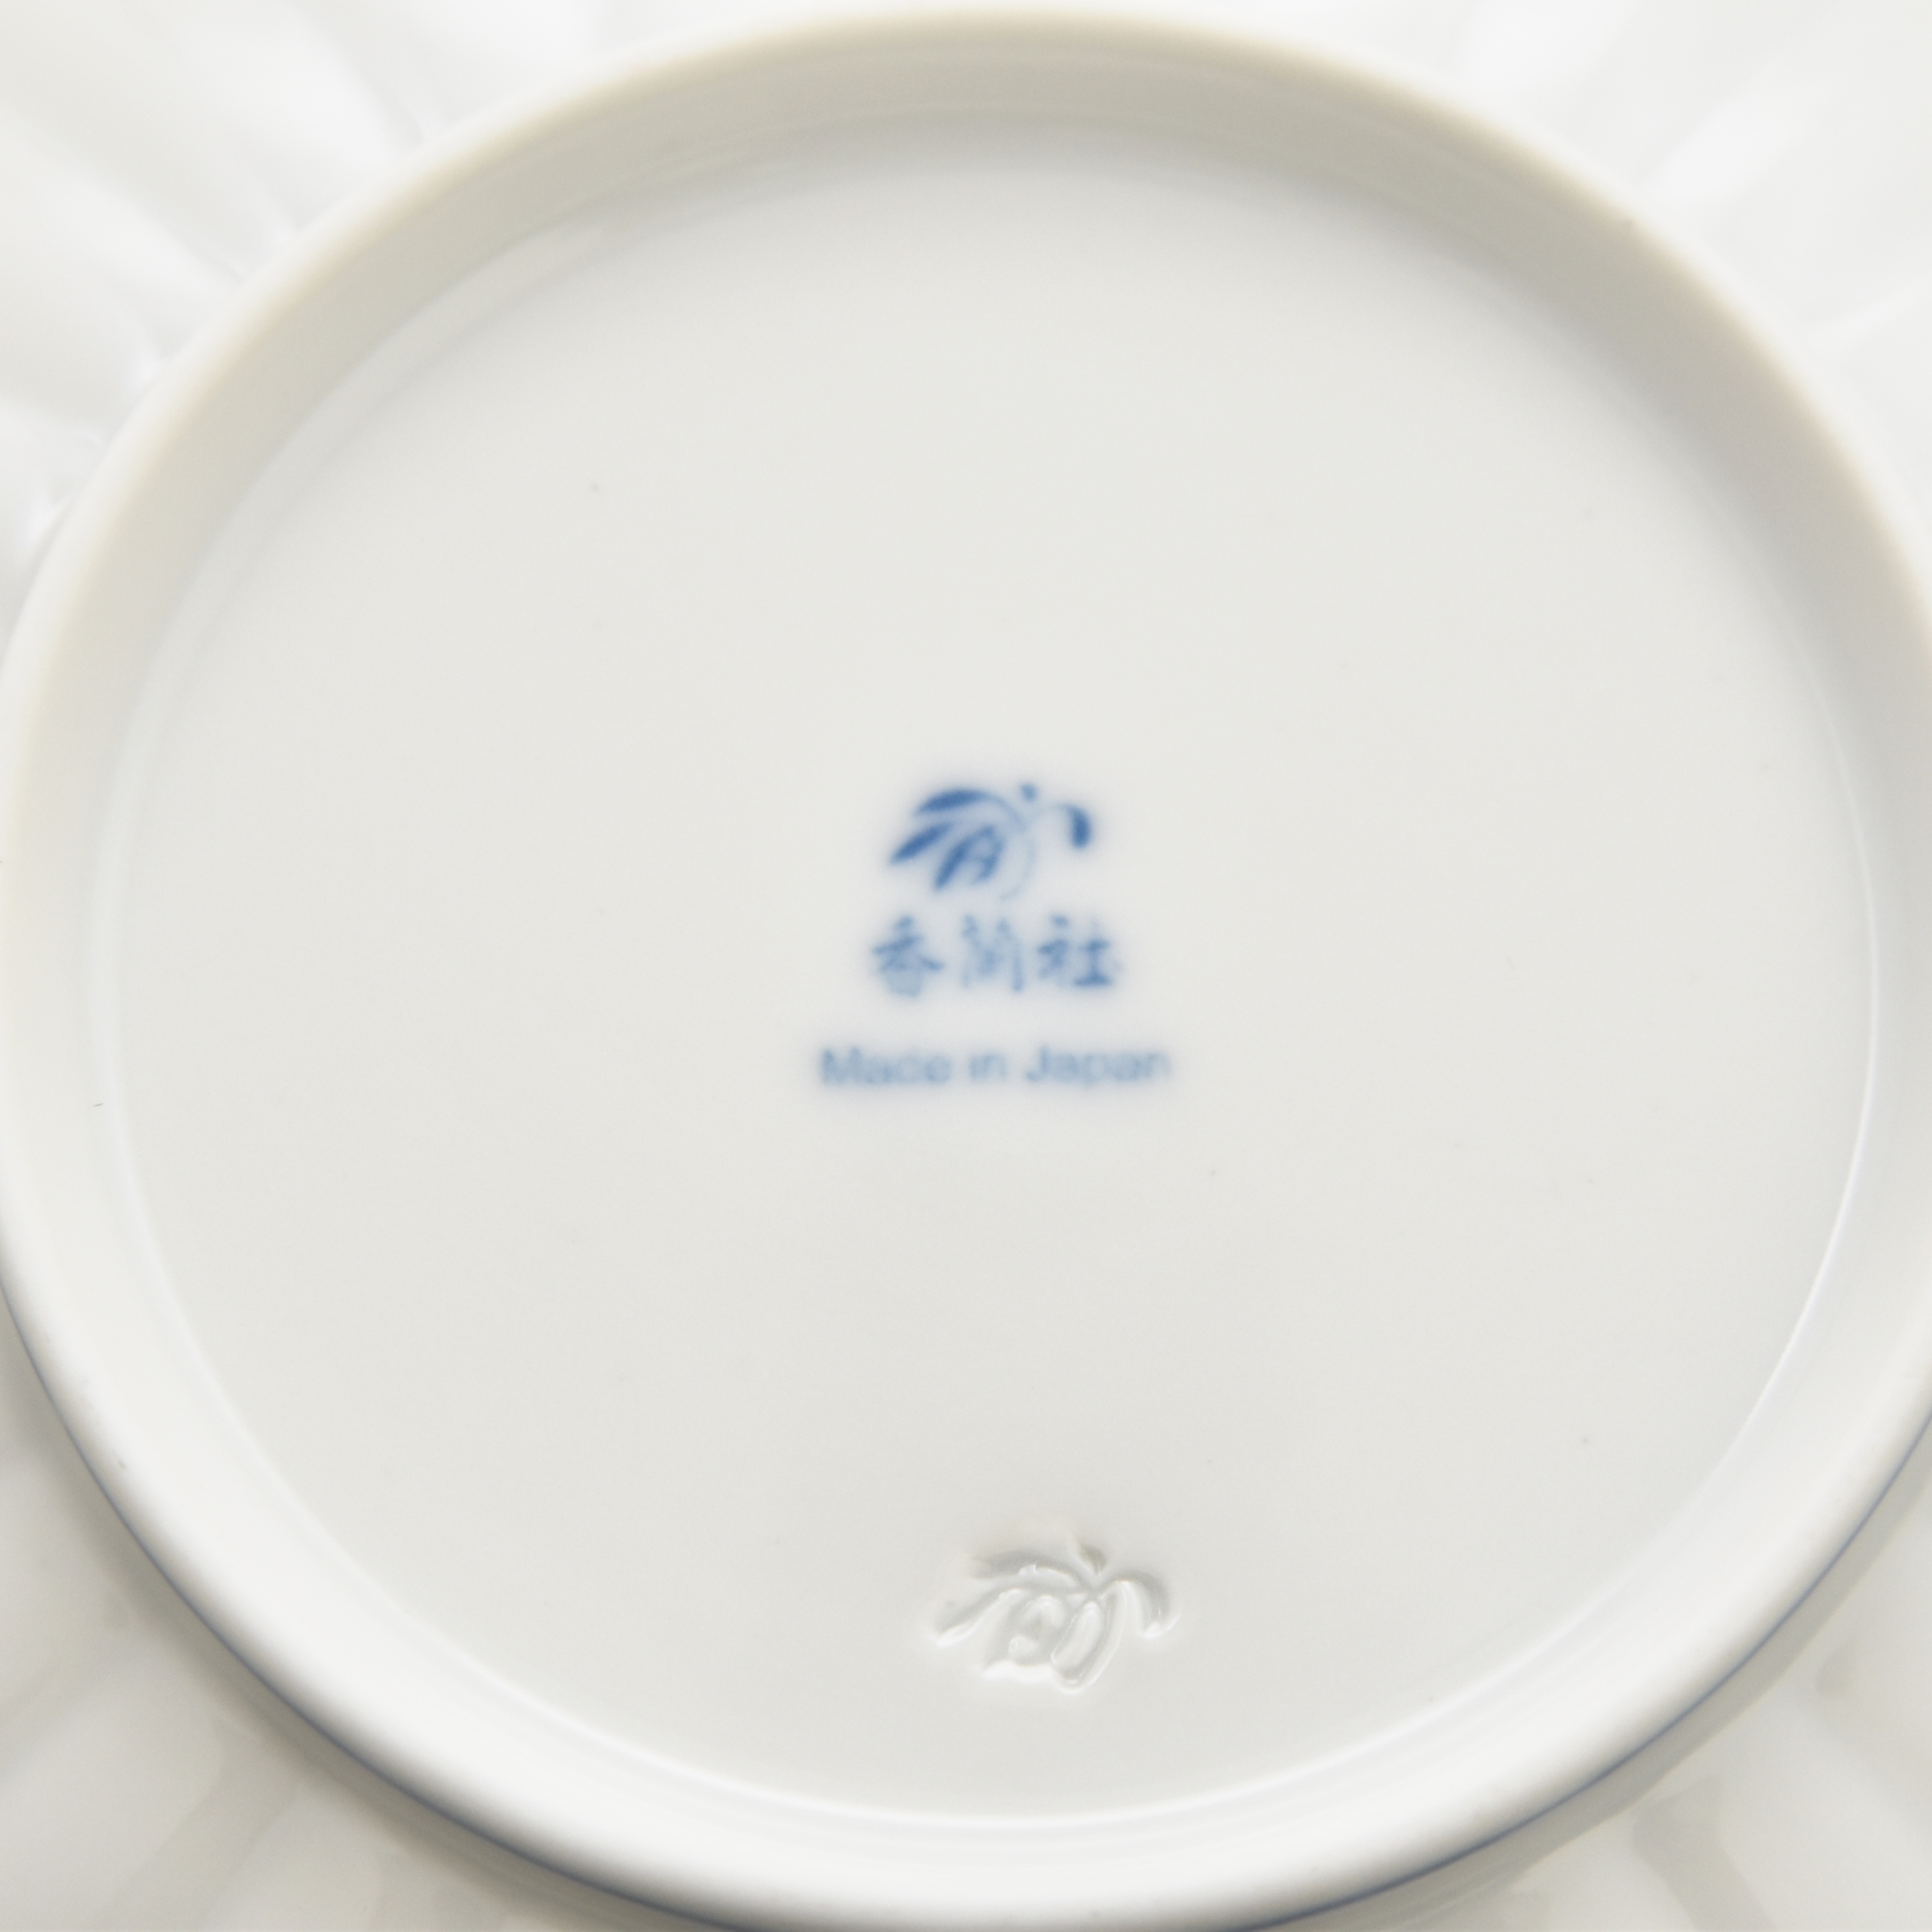 お皿の裏側は香蘭社のマークがあります。